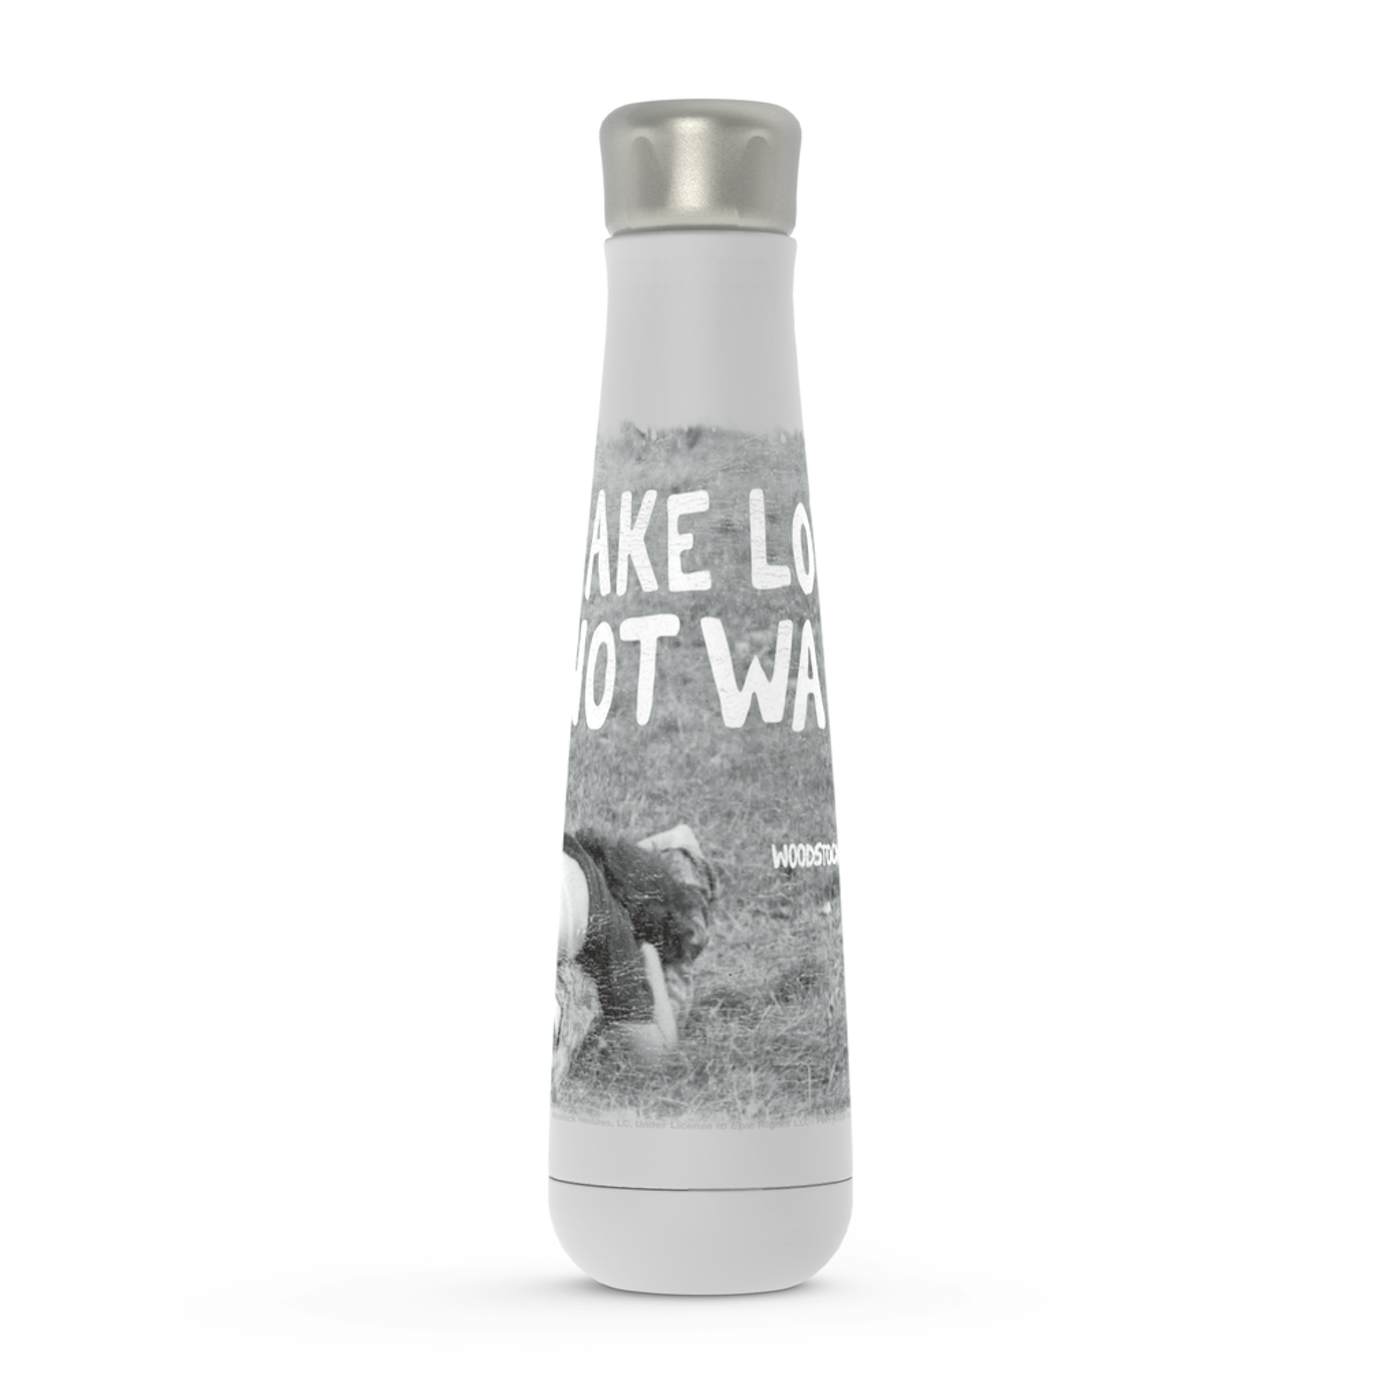 Woodstock Peristyle Water Bottle | Make Love Not War Famous Image Distressed Woodstock Water Bottle